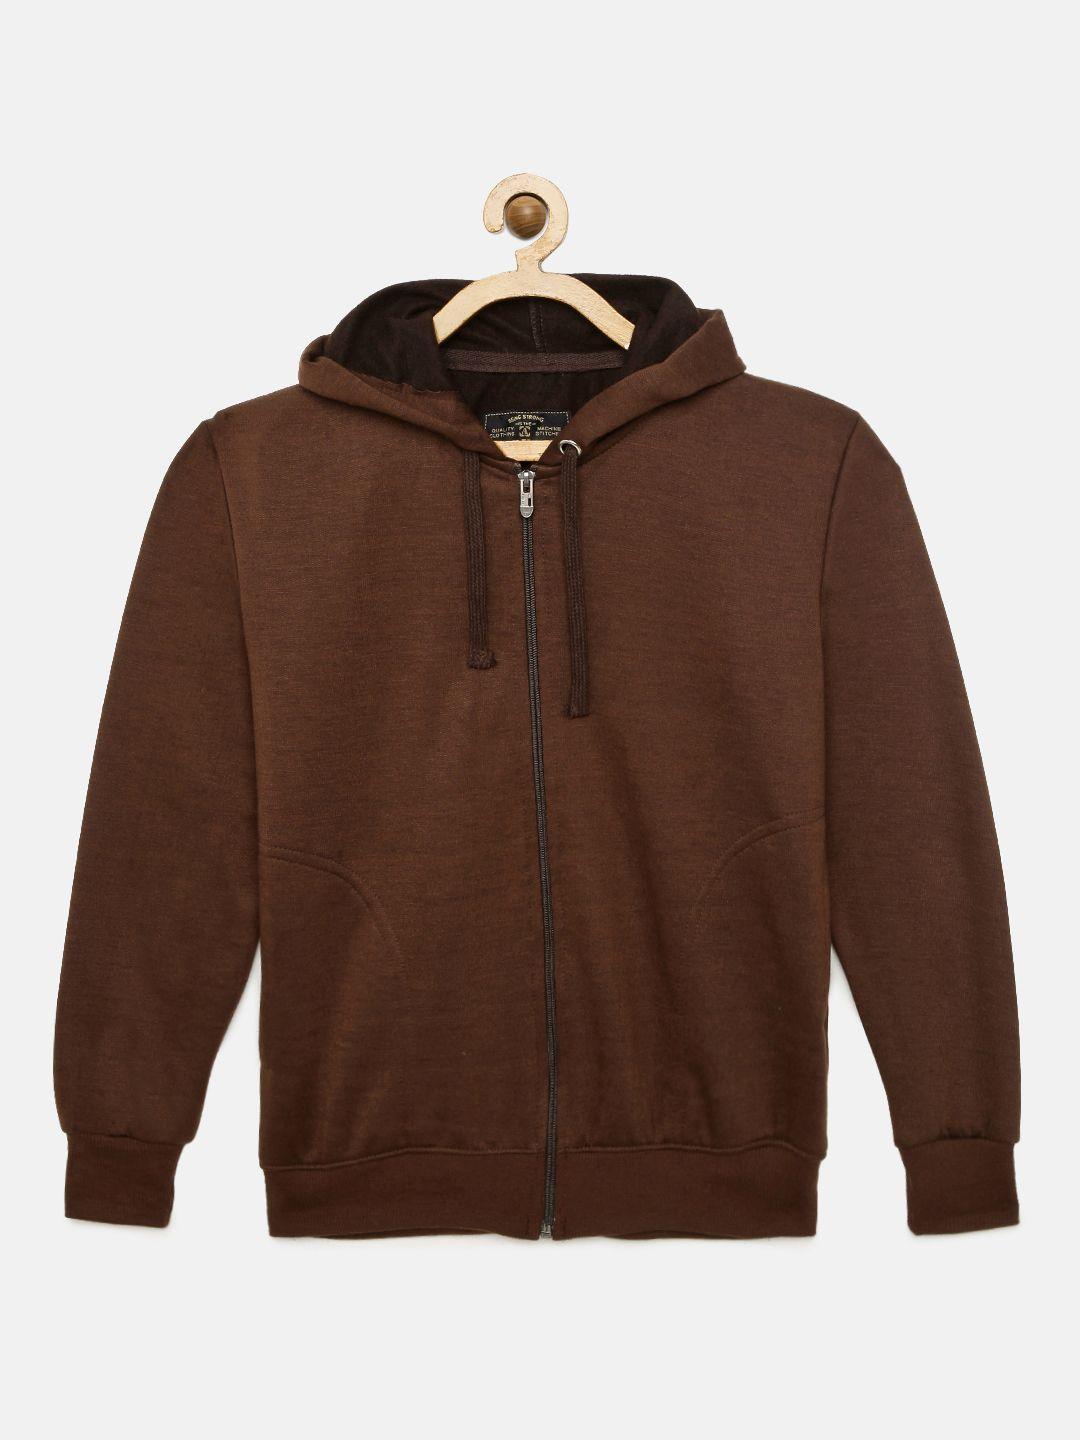 ADBUCKS Boys Brown Solid Hooded Sweatshirt